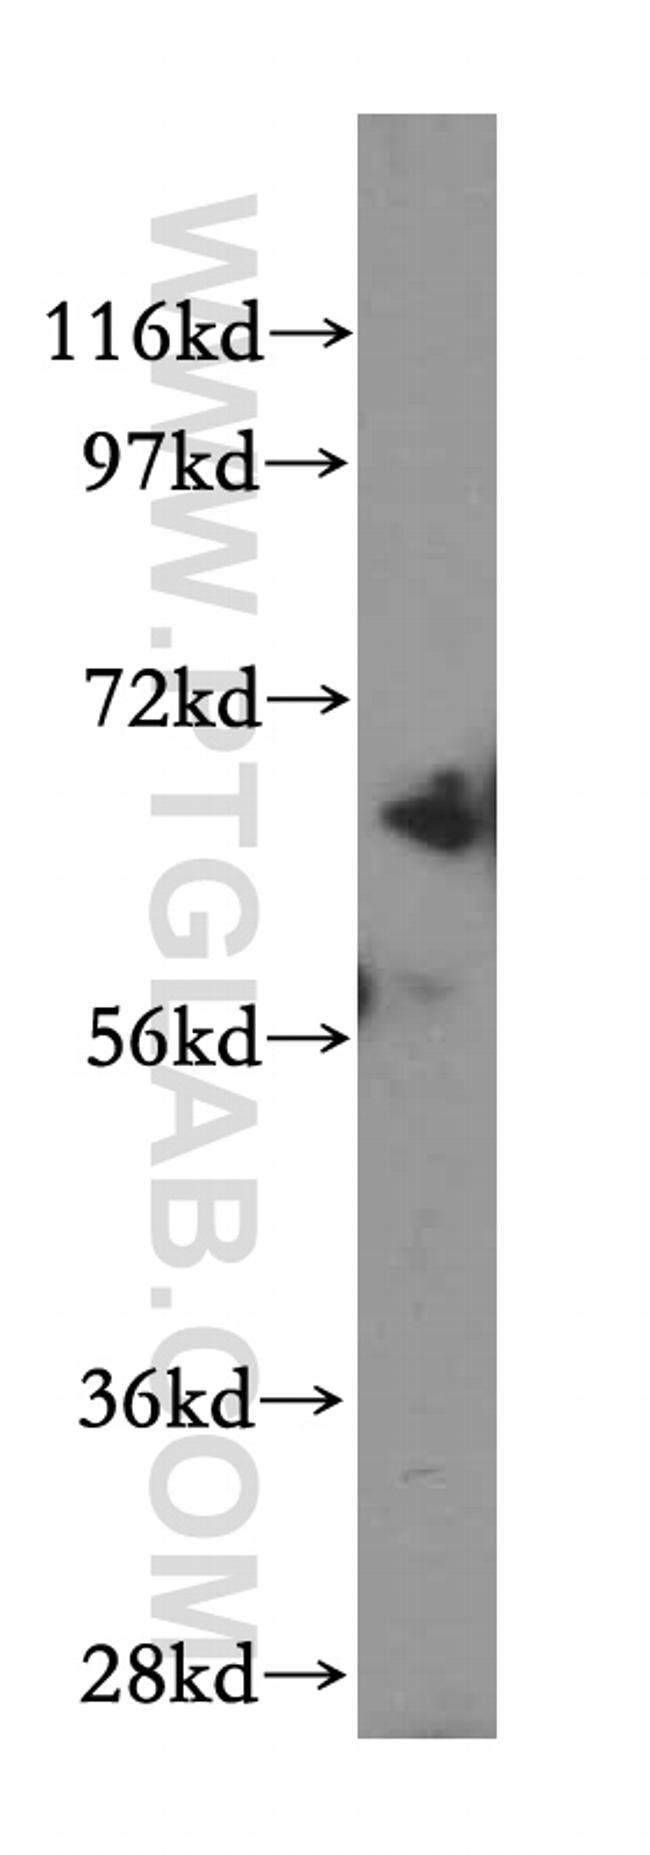 Beta galactosidase Antibody in Western Blot (WB)